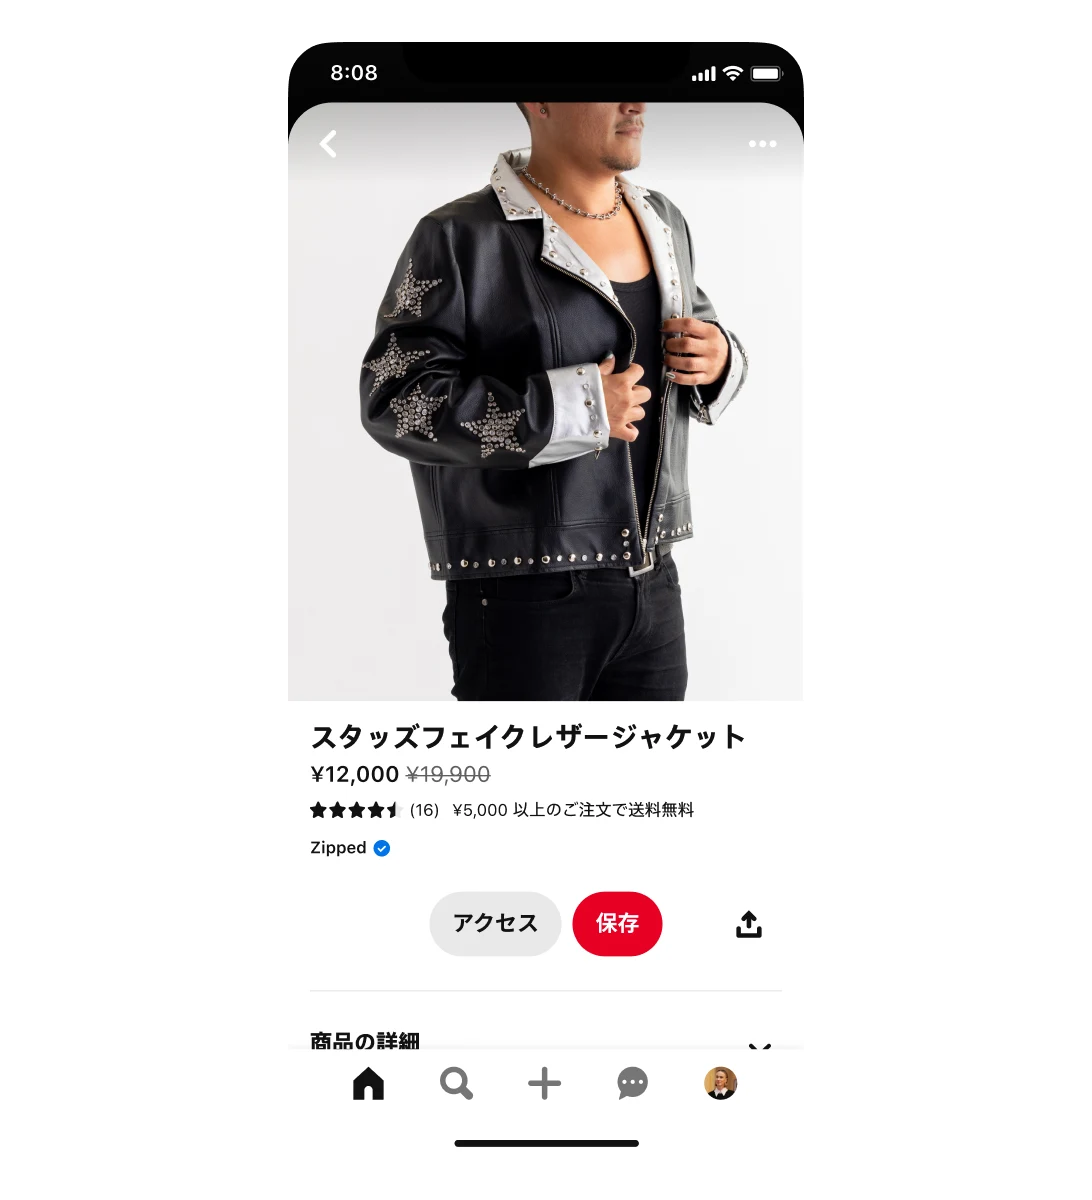 スタッズフェイクレザージャケットを掲載したショッピングアドのモバイル画面。ジャケットはセール中で、¥19,900 が ¥12,000 に値下げ。広告にはジャケットを着た男性の画像。